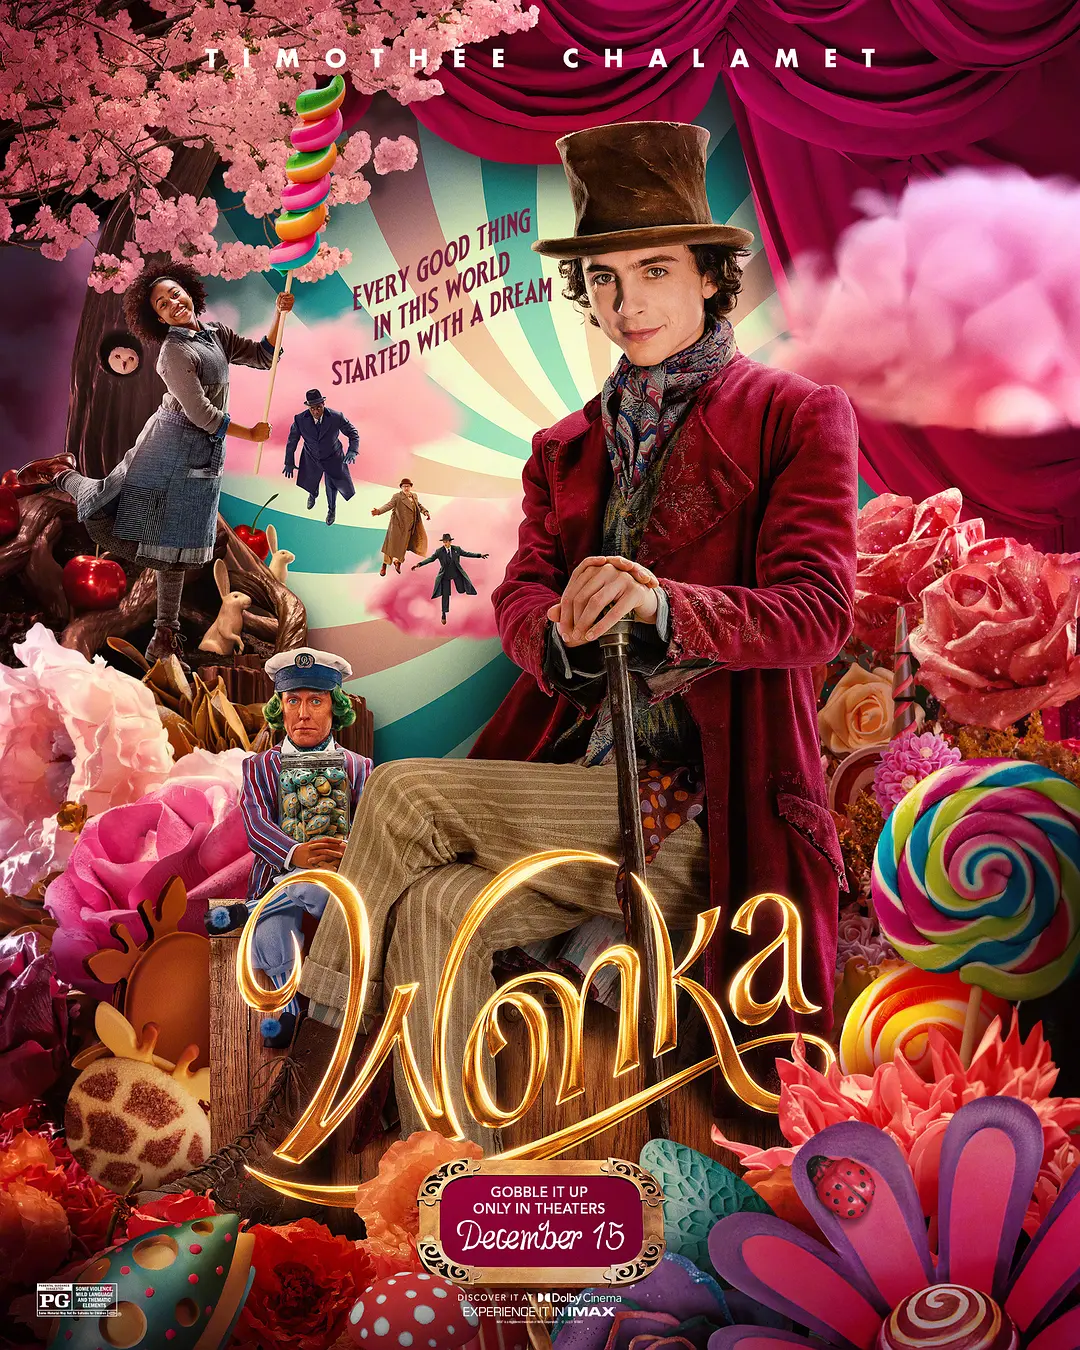 [影视] 旺卡 WEB-DL版下载/查理和巧克力工厂前传 2023 Wonka 20.18G